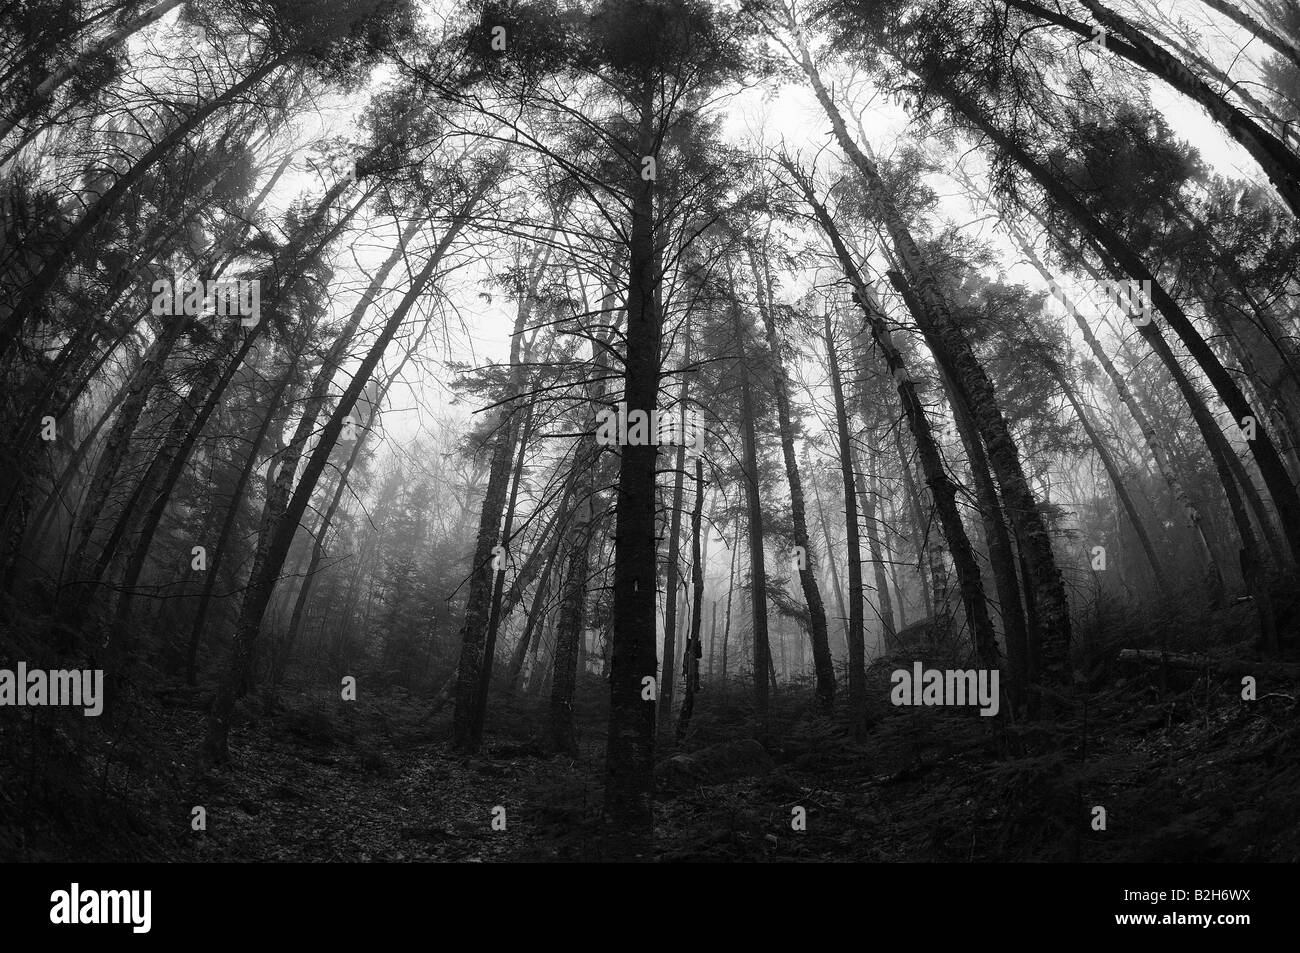 Un noir et blanc, photographie de vue fisheye arbres dans la brume d'automne, pour atteindre autour de l'appareil photo comme si pour étouffer le spectateur Banque D'Images